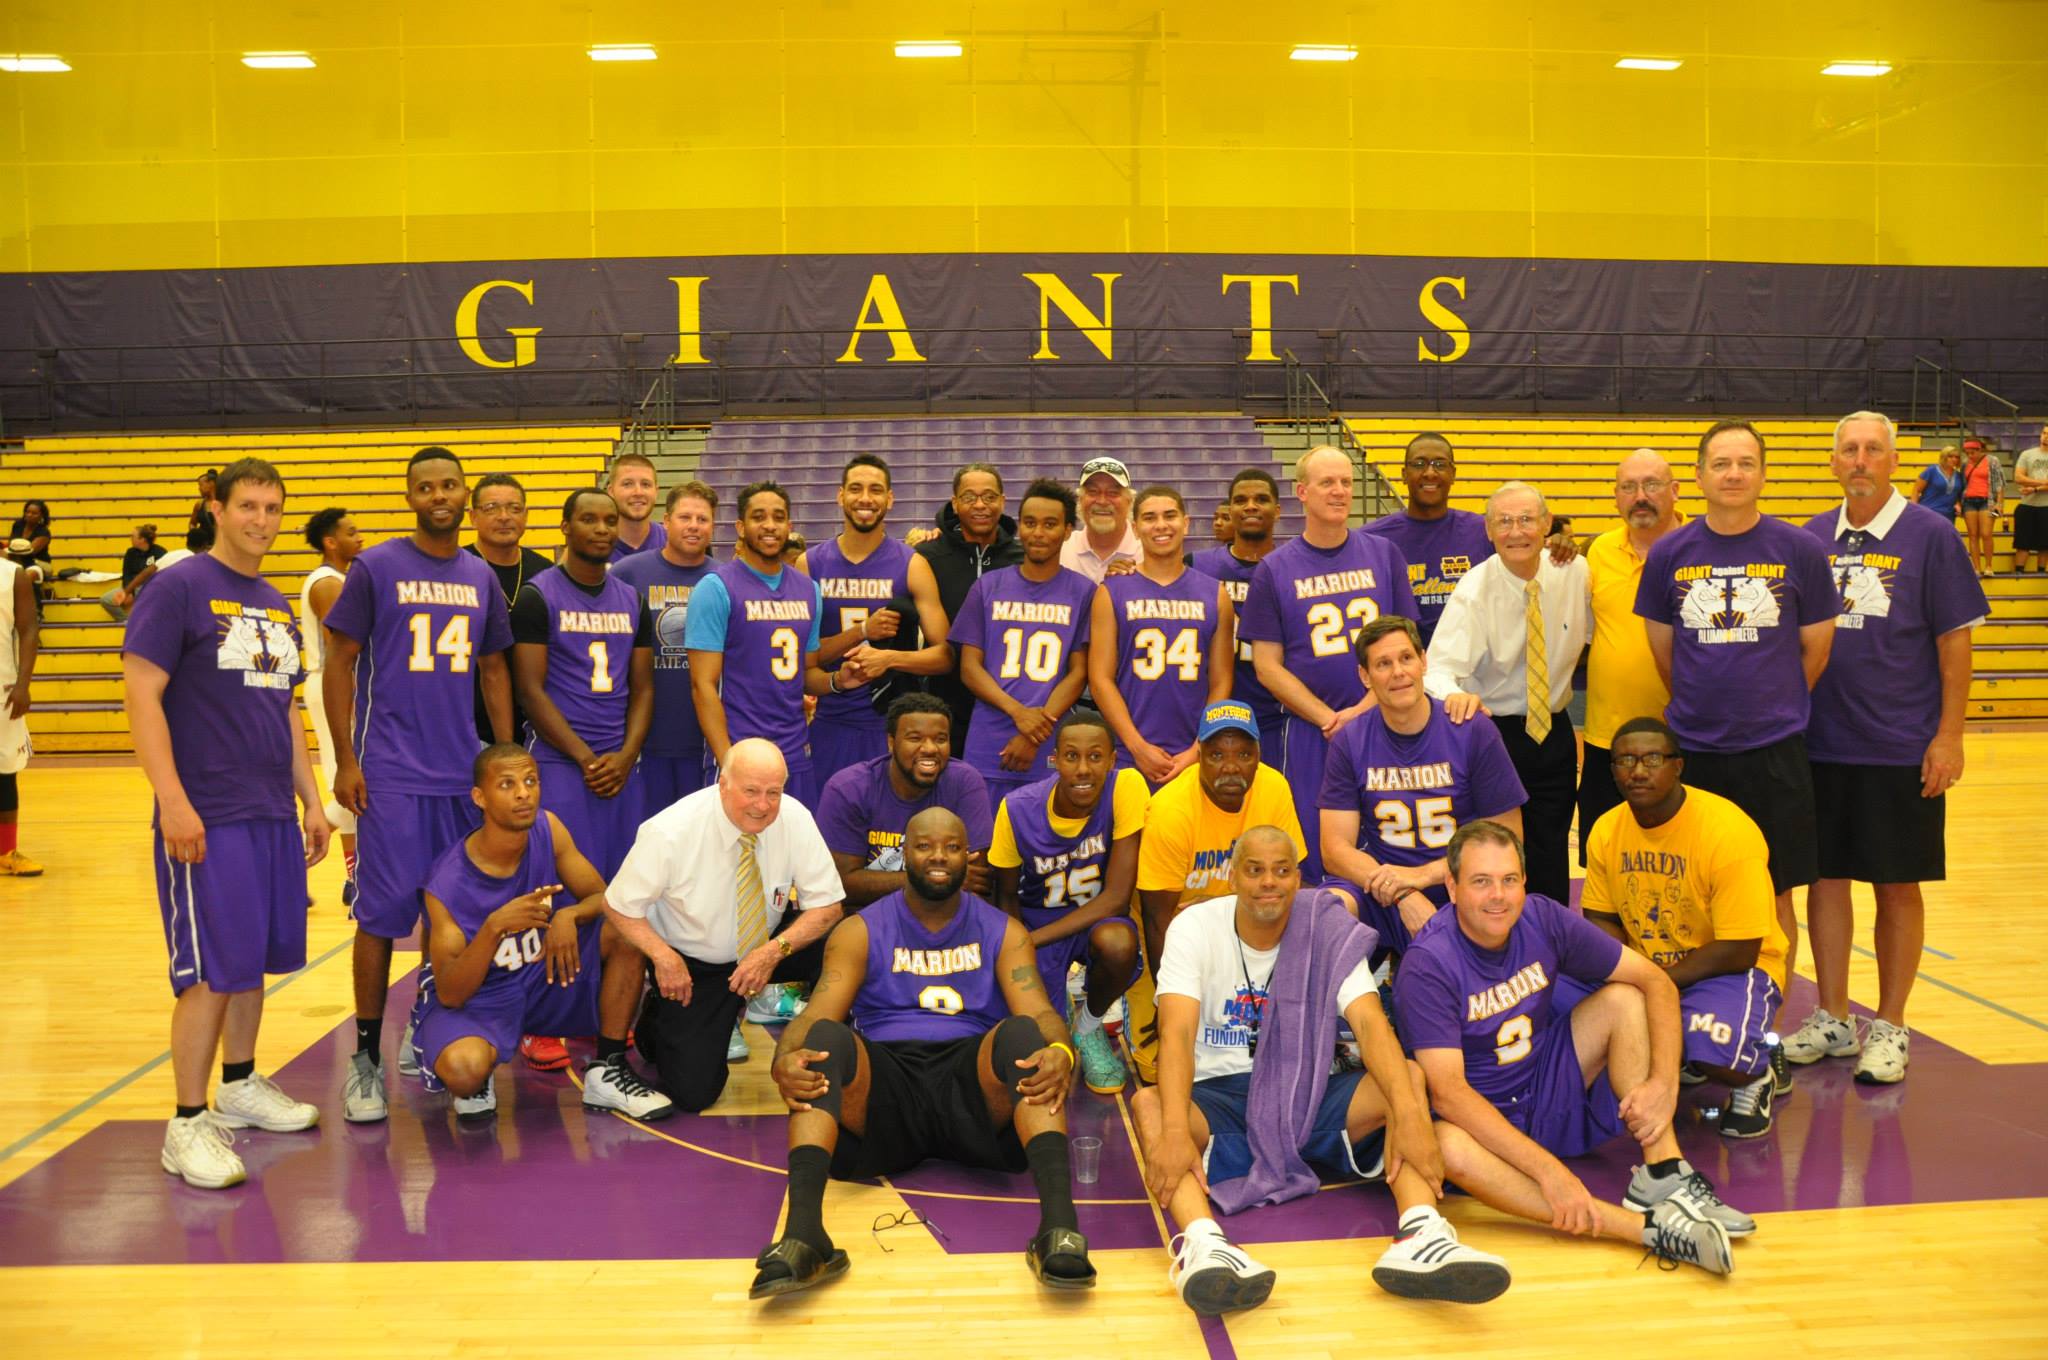 Giant Challenge 2015 boys basketball alumni team